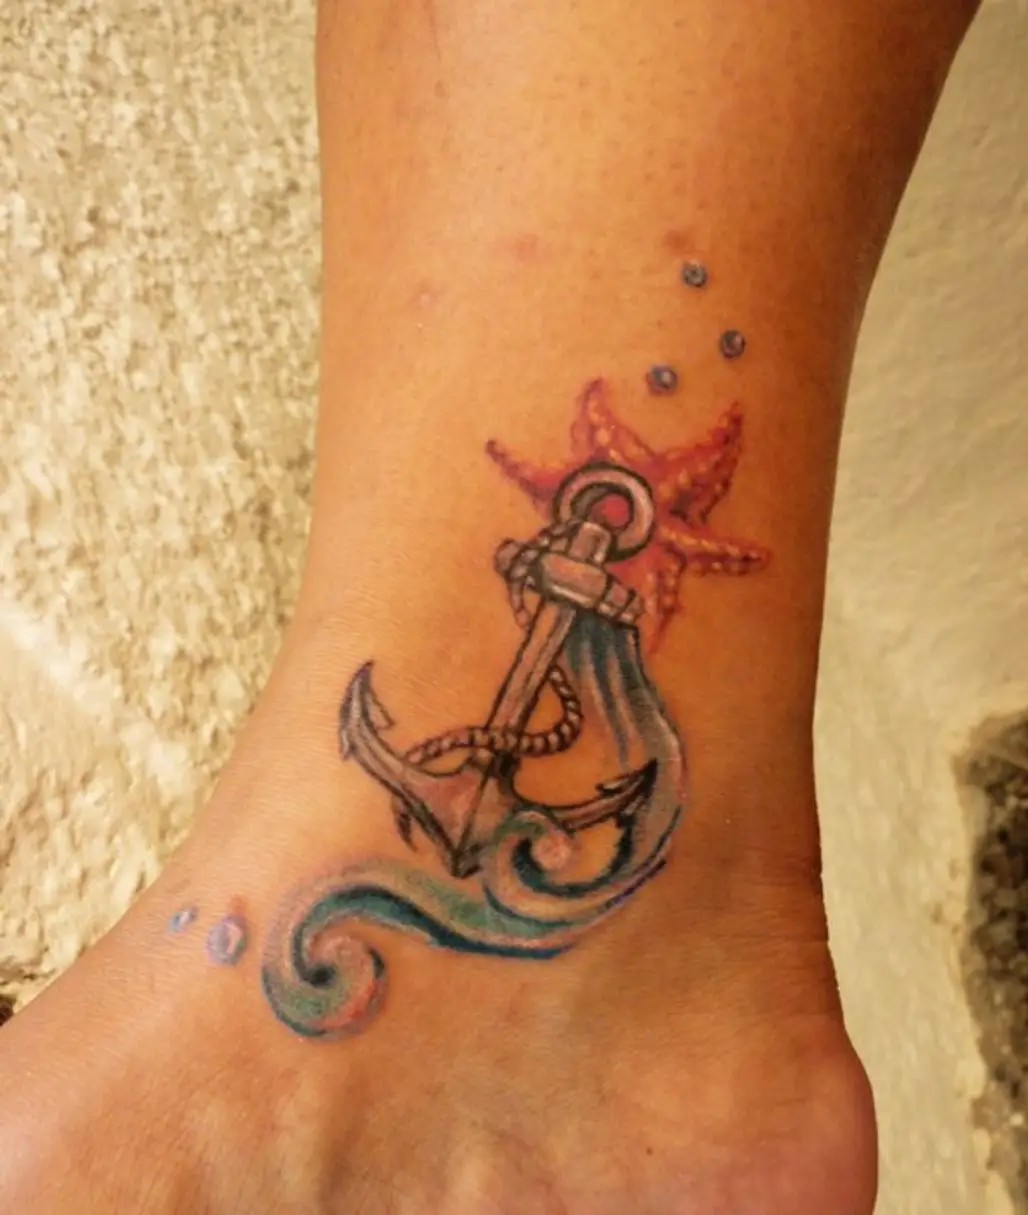 tattoo,arm,skin,pattern,leg,